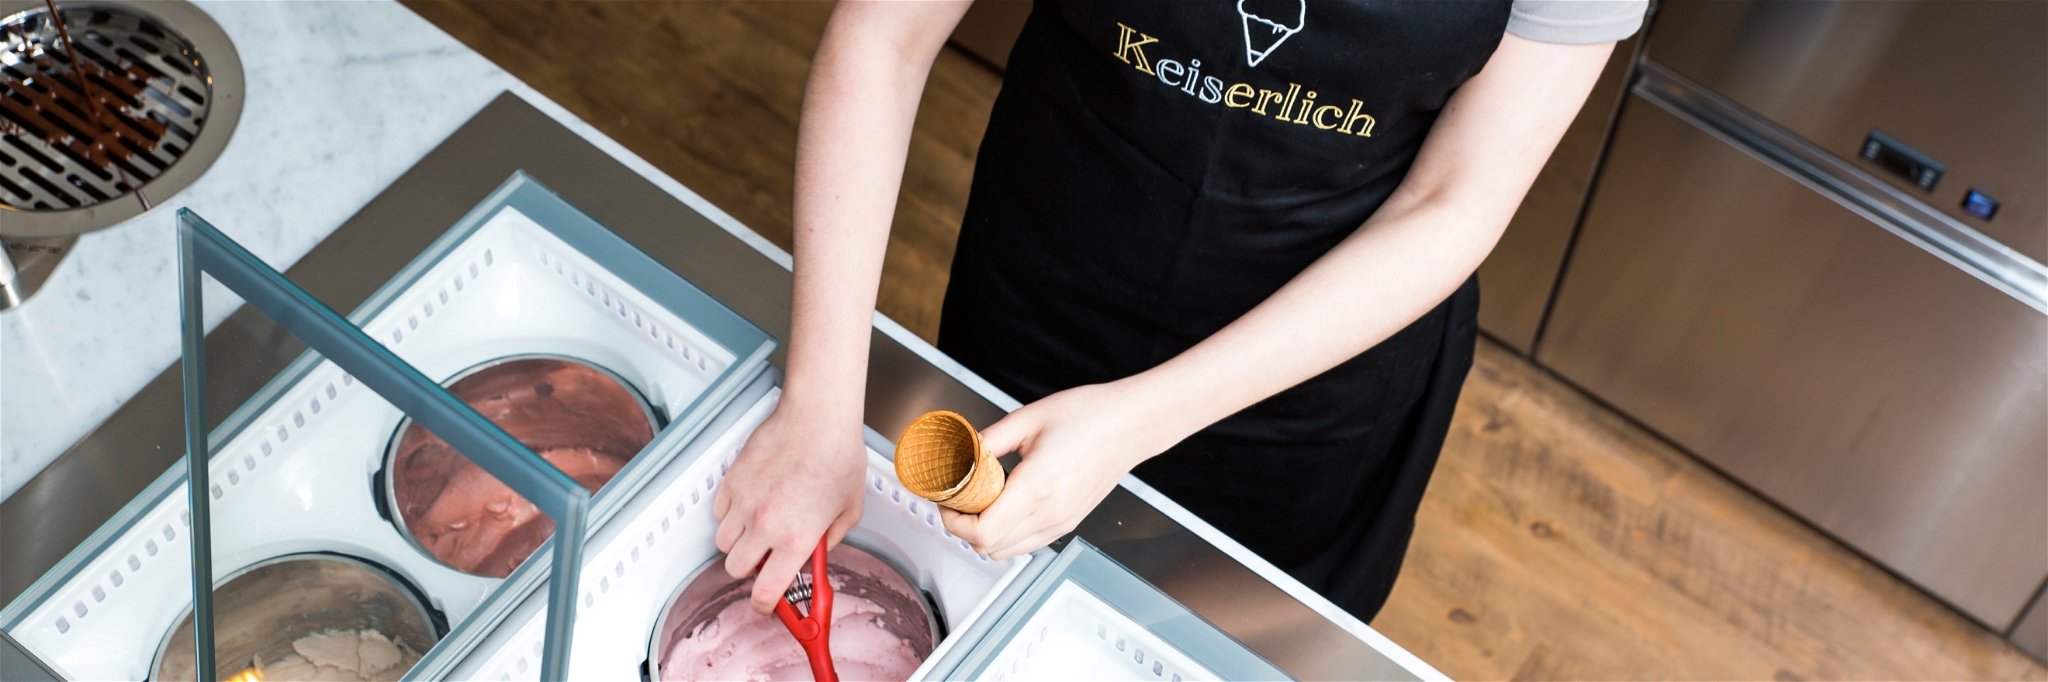 Wer ausgefallene Eissorten mag, sollte in Köln bei der Eismanufaktur »Keiserlich« vorbeischauen.